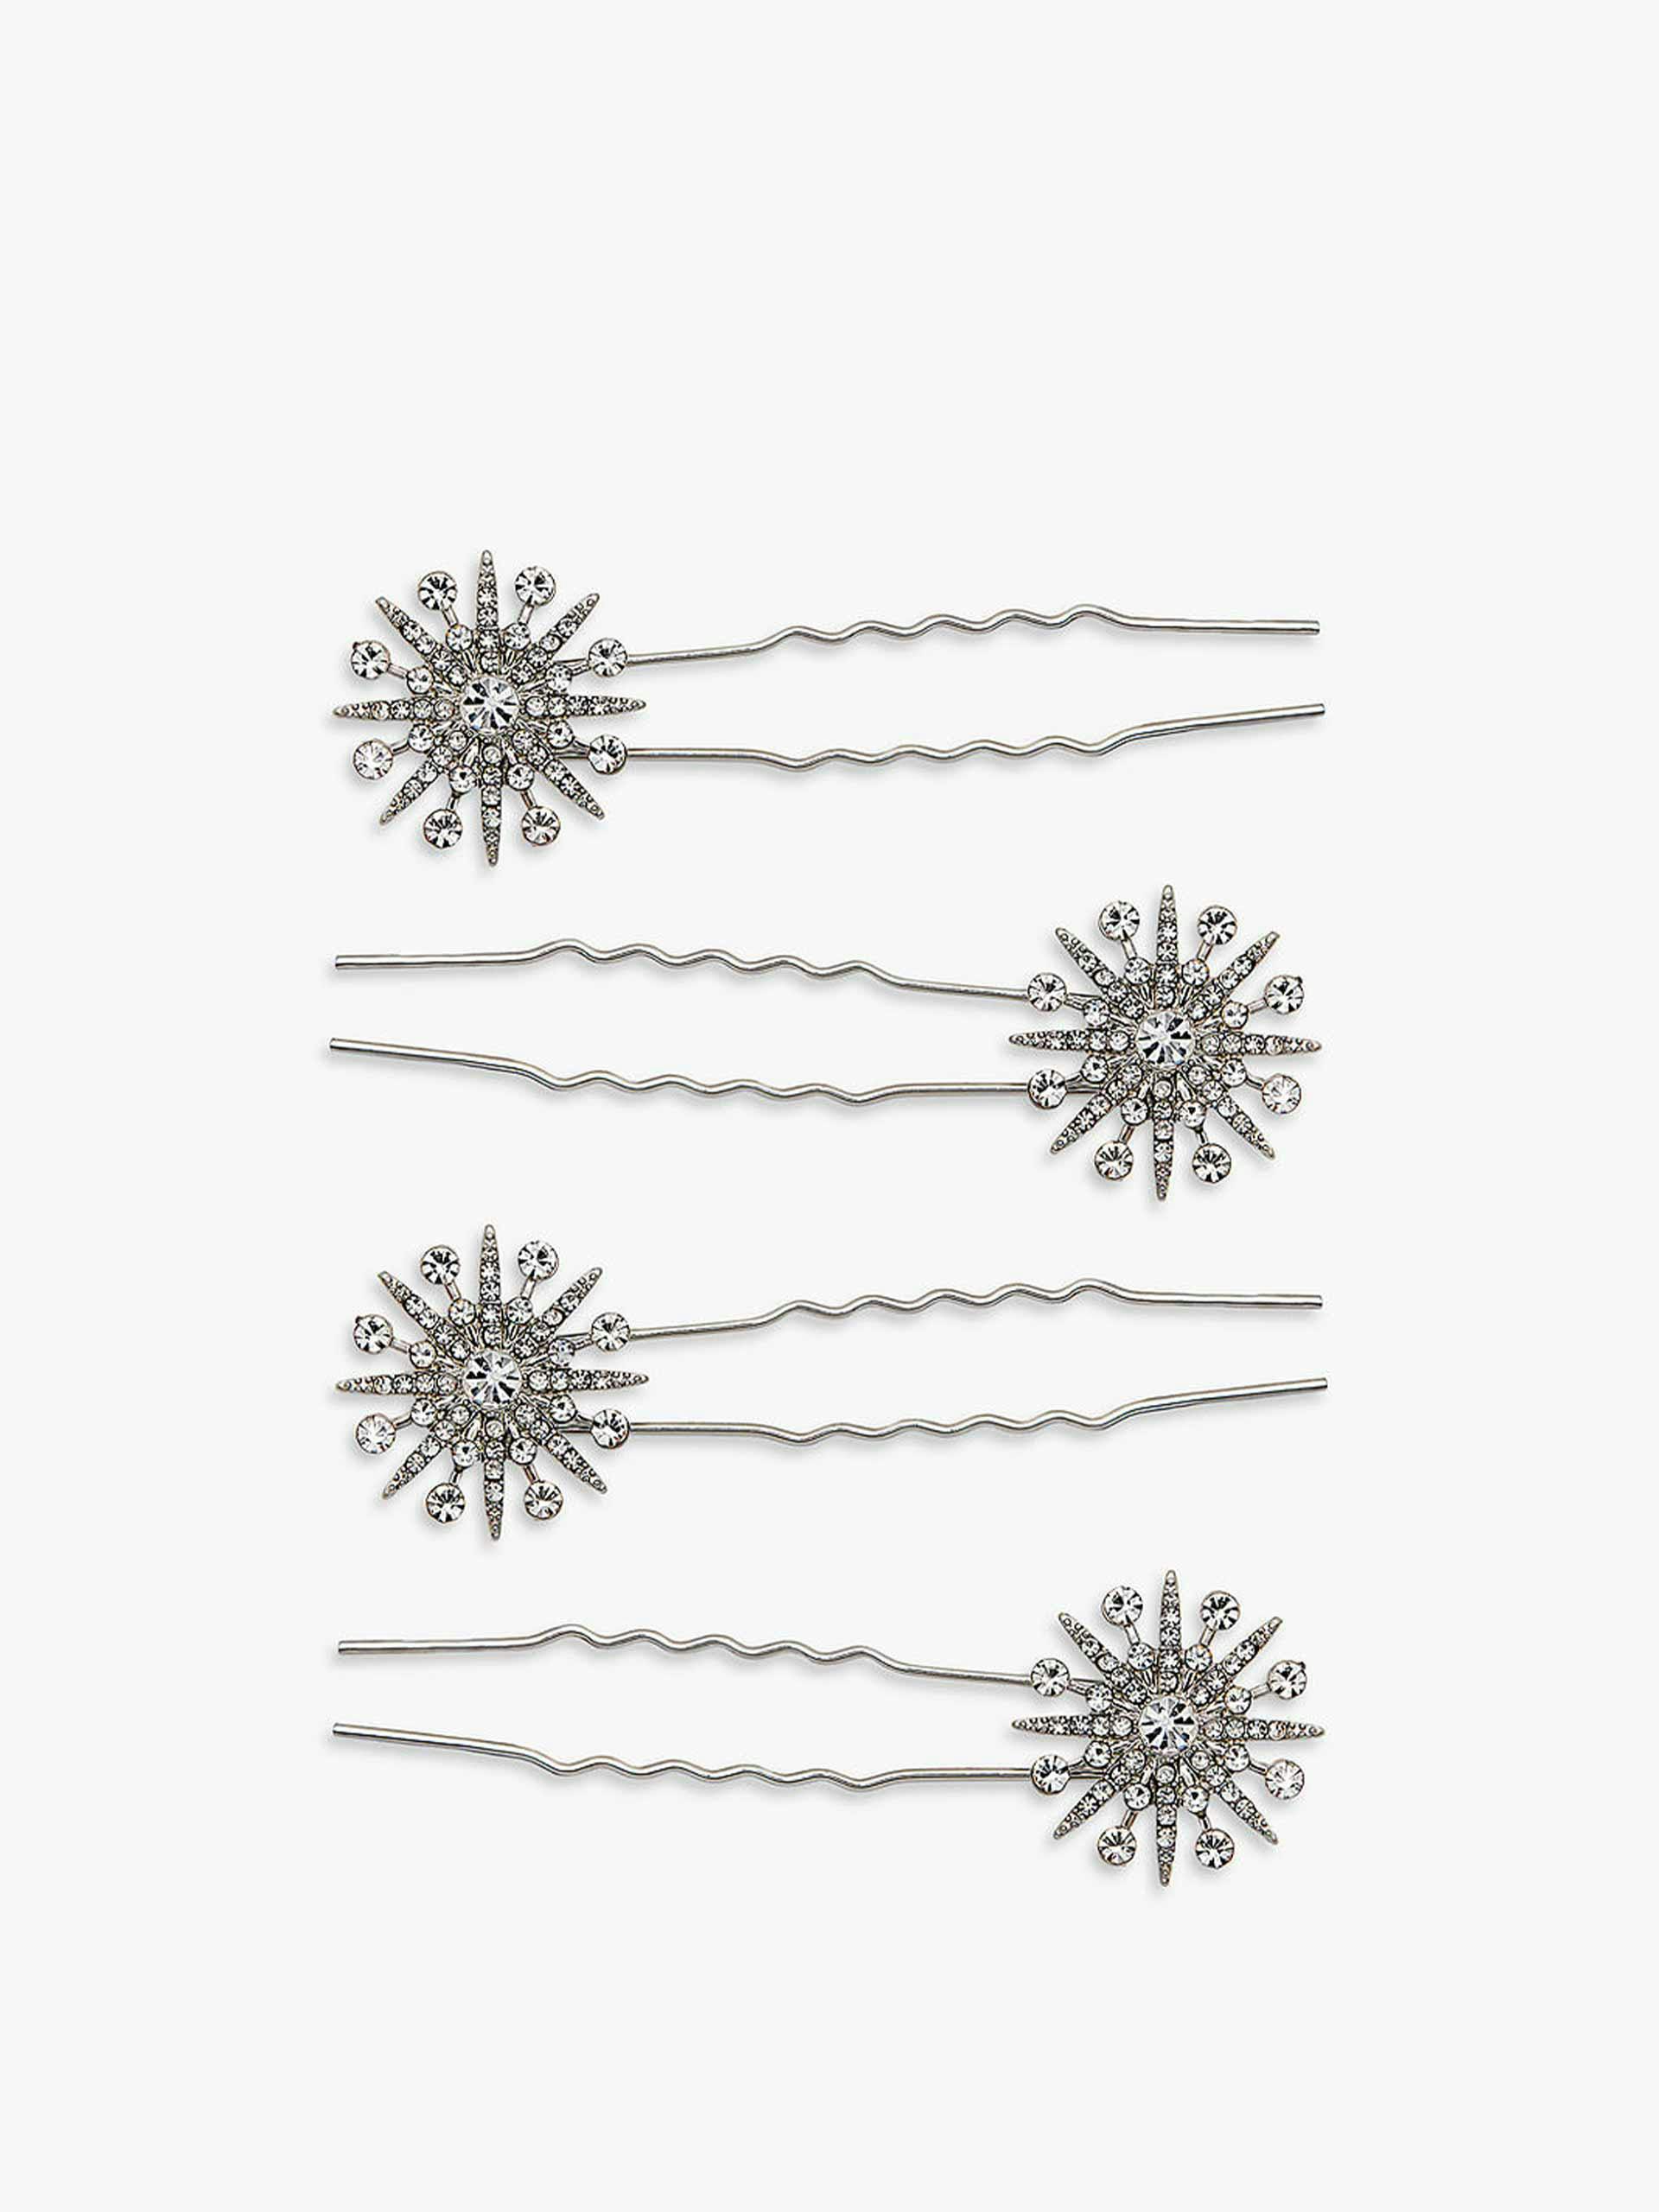 Starburst hair pins (set of 4)